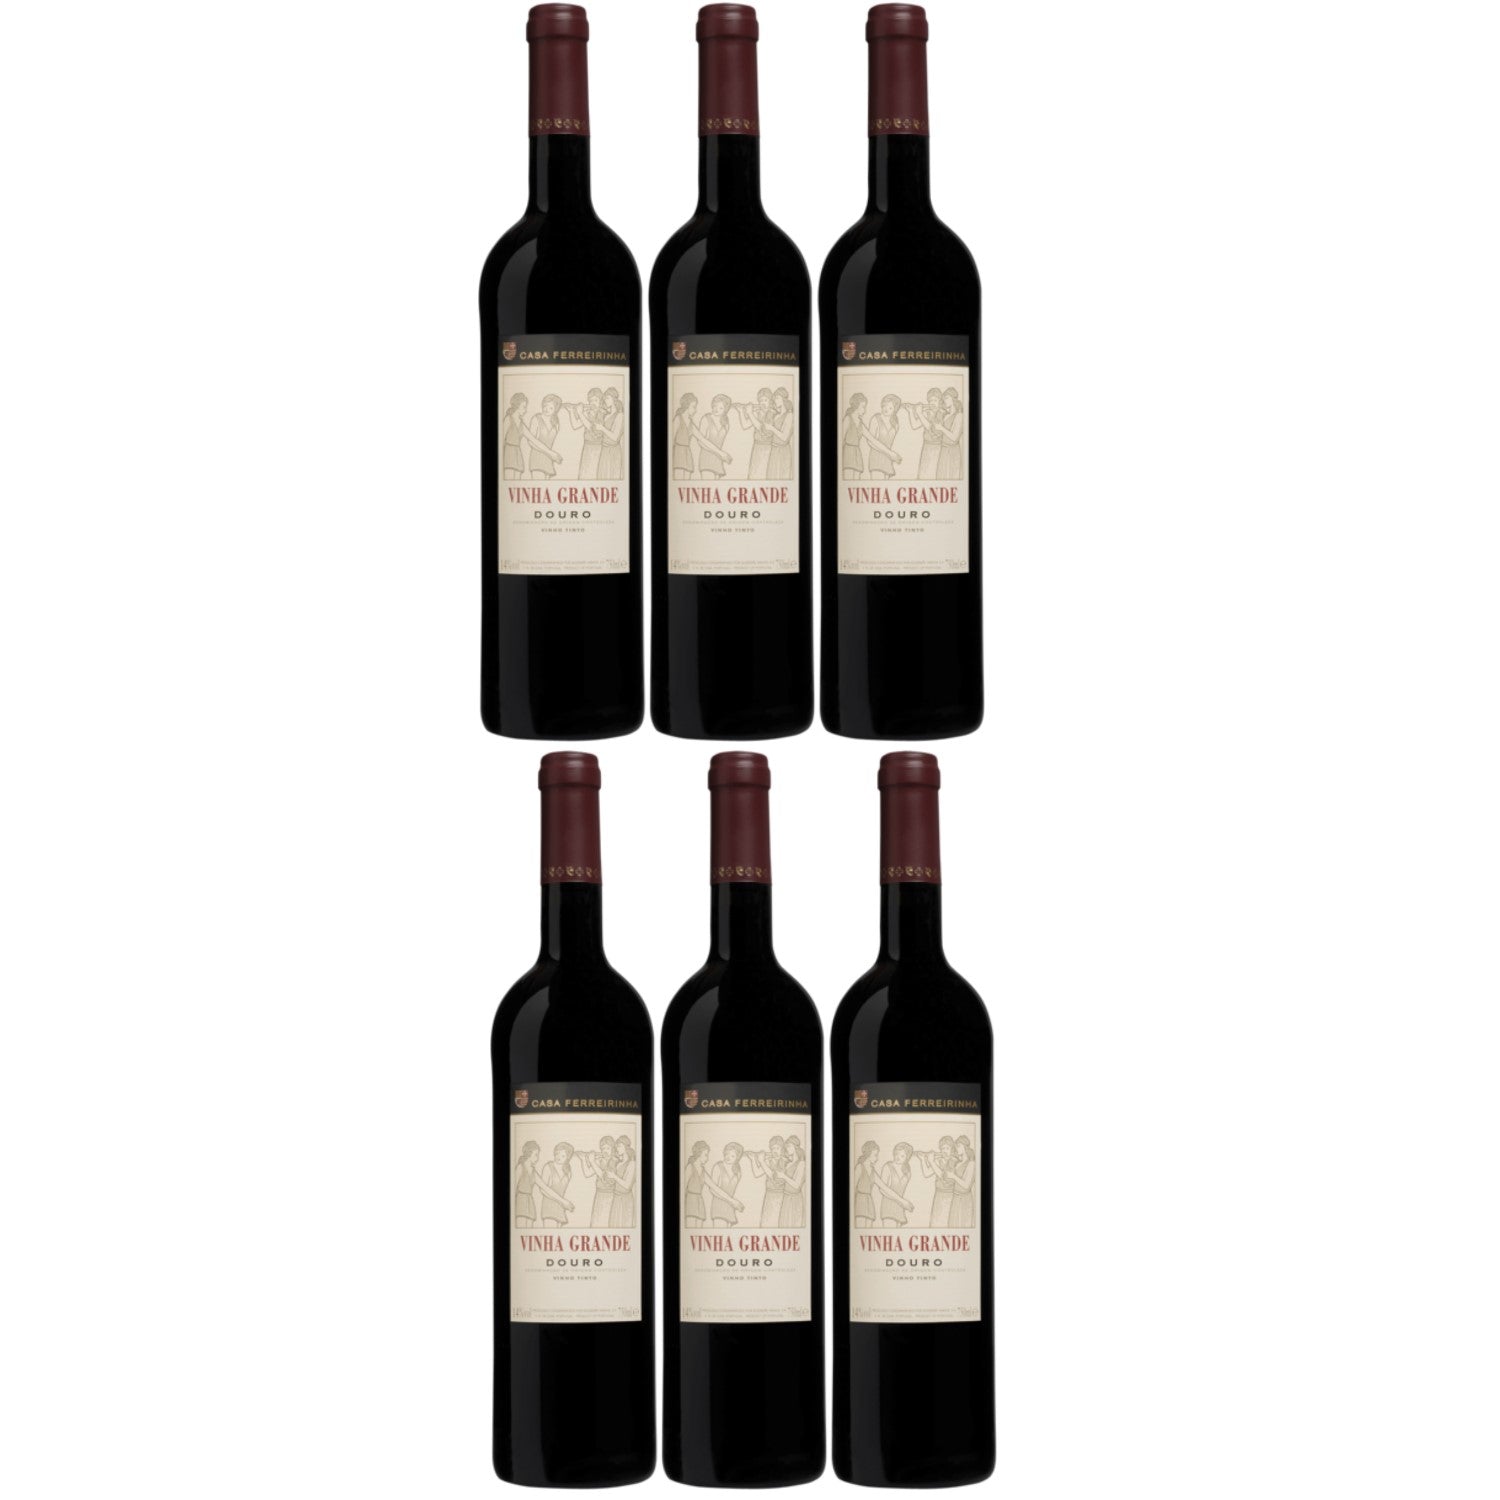 Casa Ferreirinha Vinha Grande Douro Rotwein Wein trocken DOP Portugal (6 x 0.75l) - Versanel -